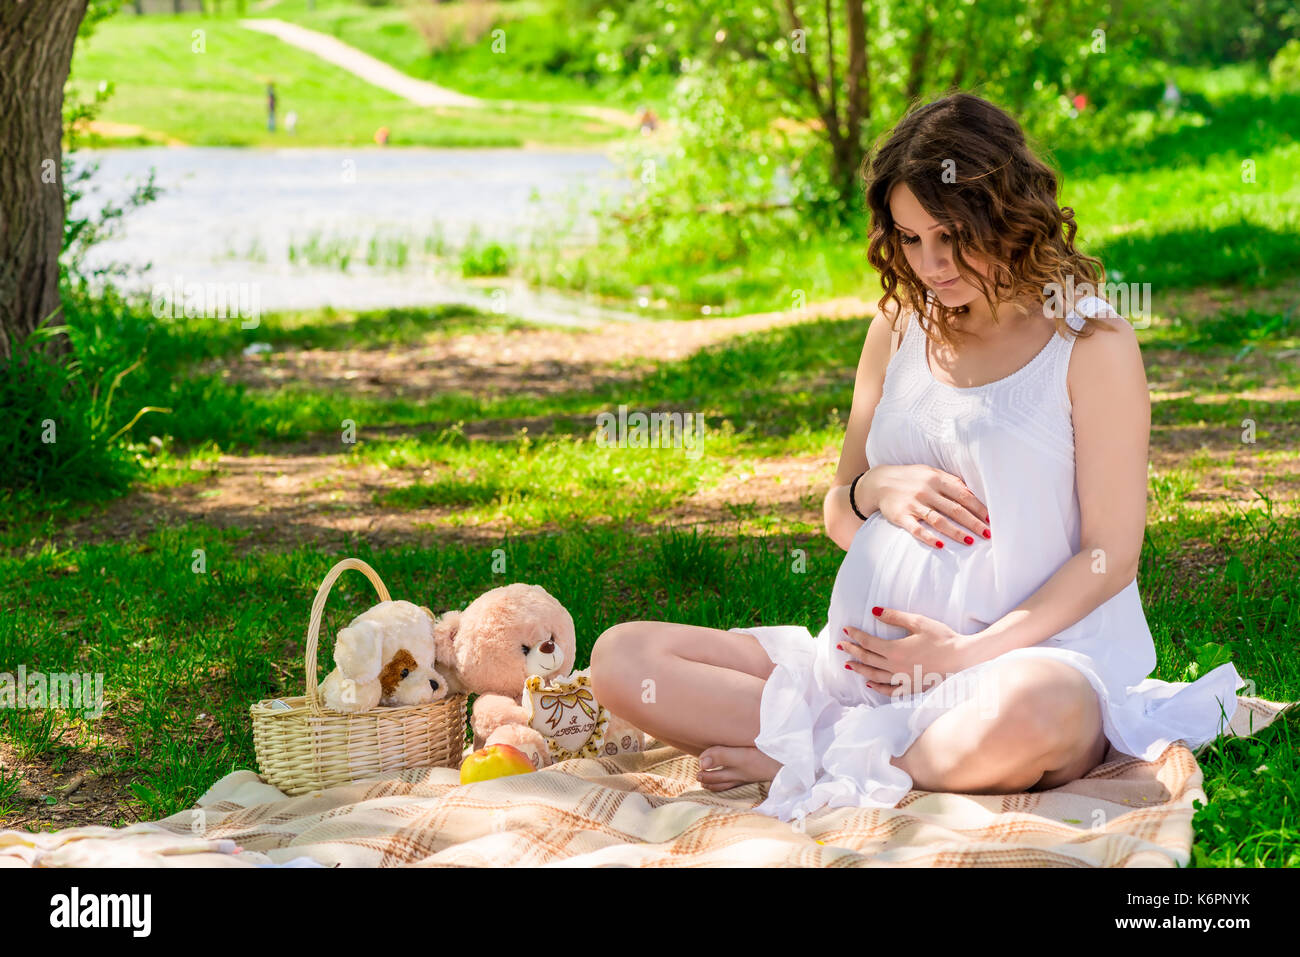 Ritratto di una giovane madre in attesa ad un picnic nel parco Foto Stock